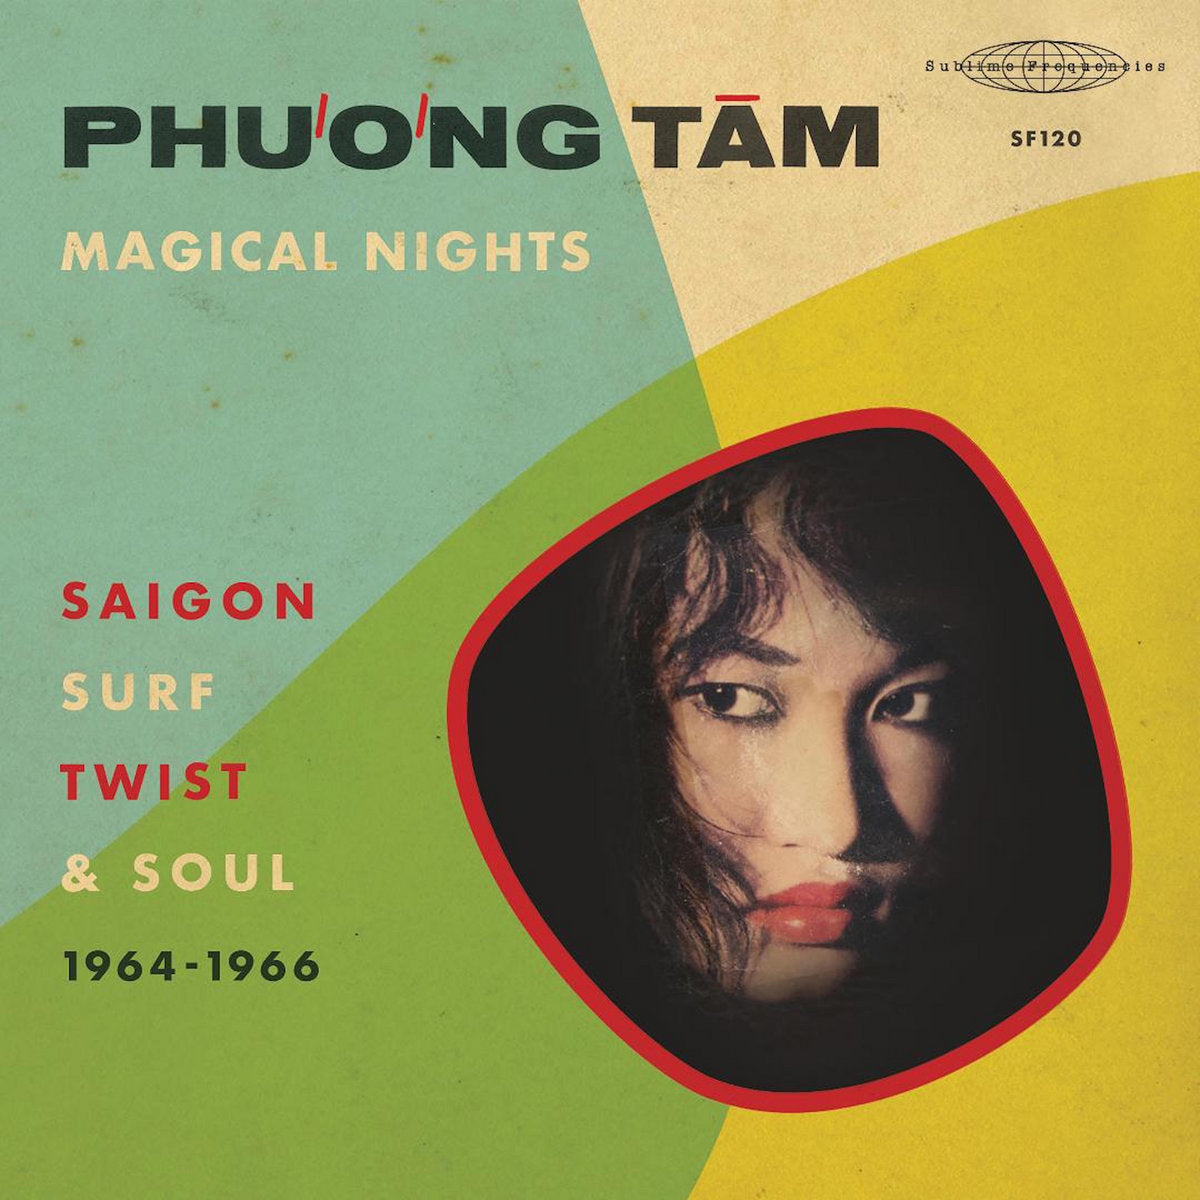 Phương Tâm - Magical Nights - Saigon Surf Twist & Soul (1964-1966)